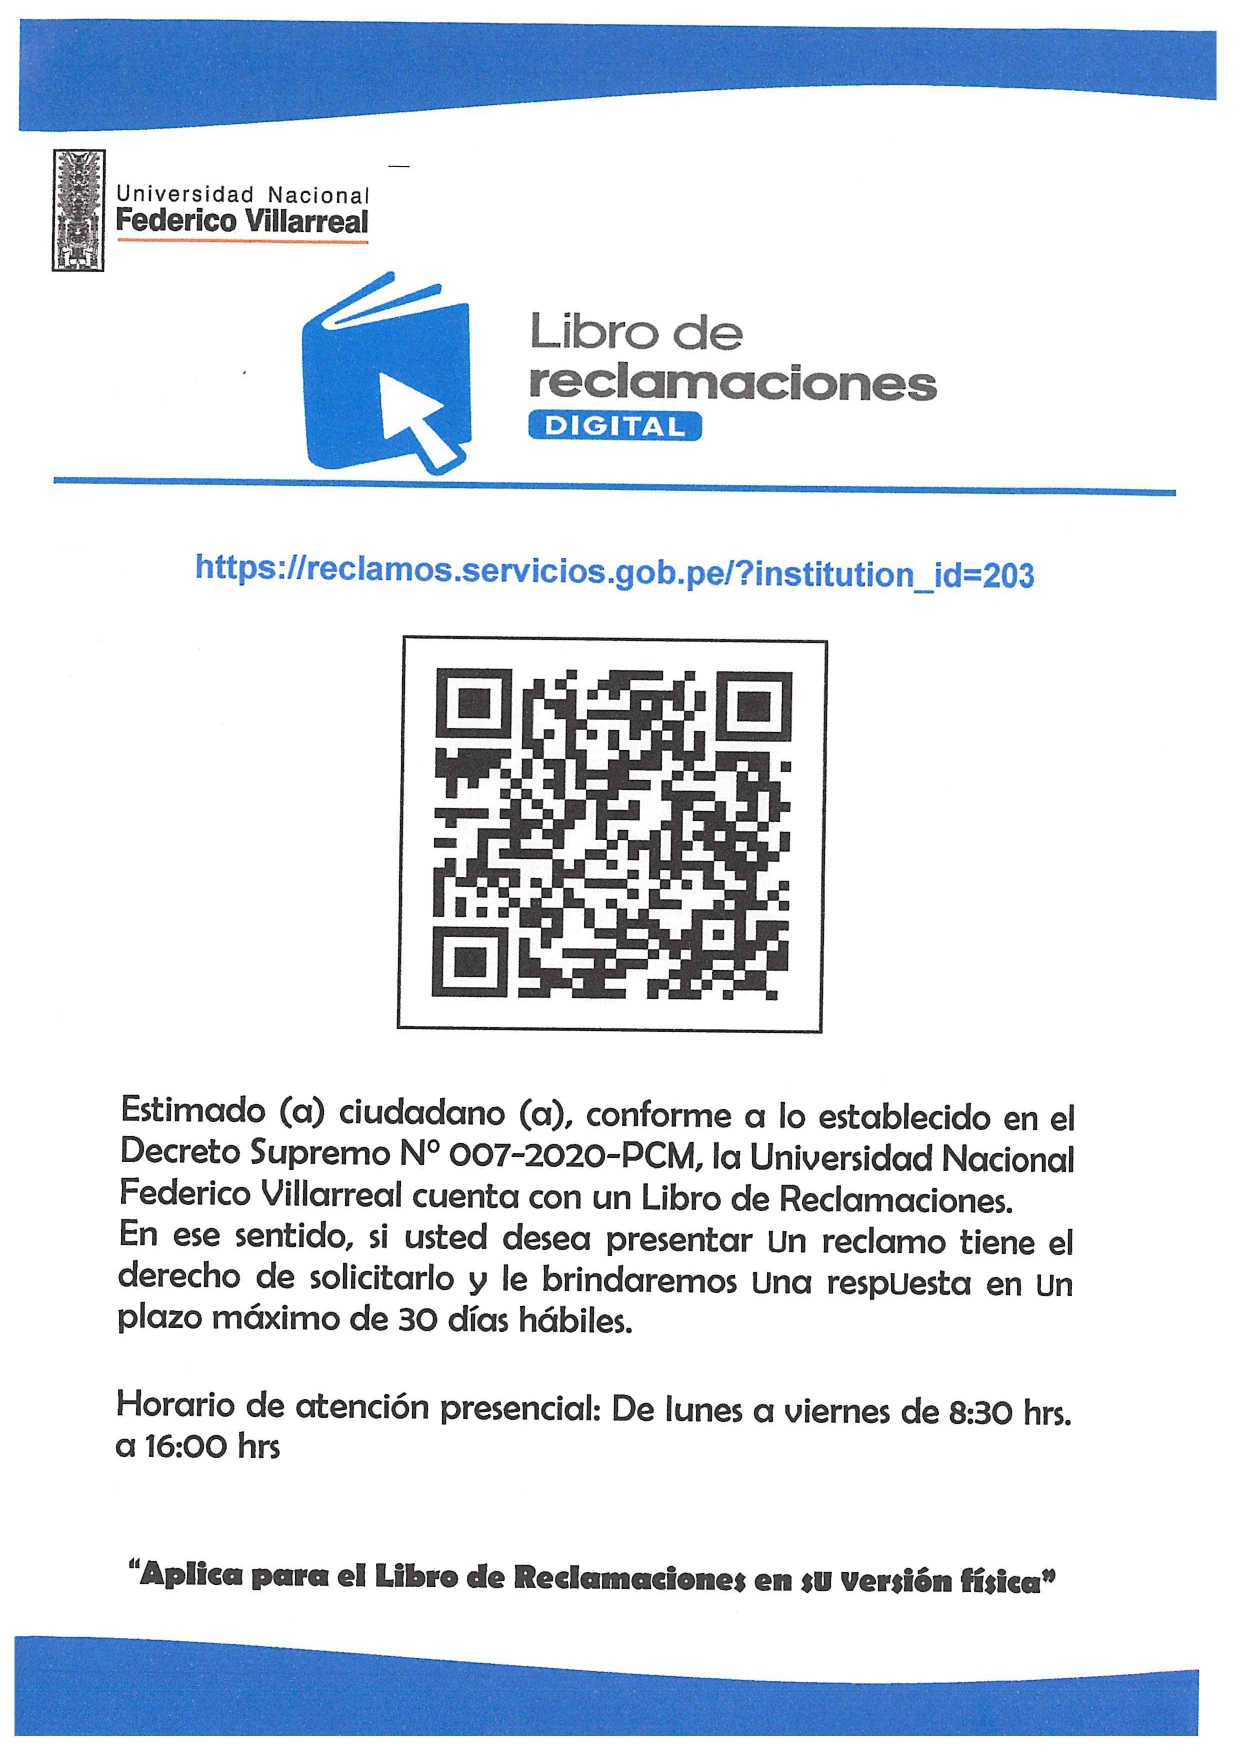 on Twitter: "📌 LIBRO DE RECLAMACIONES DIGITAL 👉 https://t.co/l77XK1Kos0 #UNFV https://t.co/v6CWN8Um0E" /